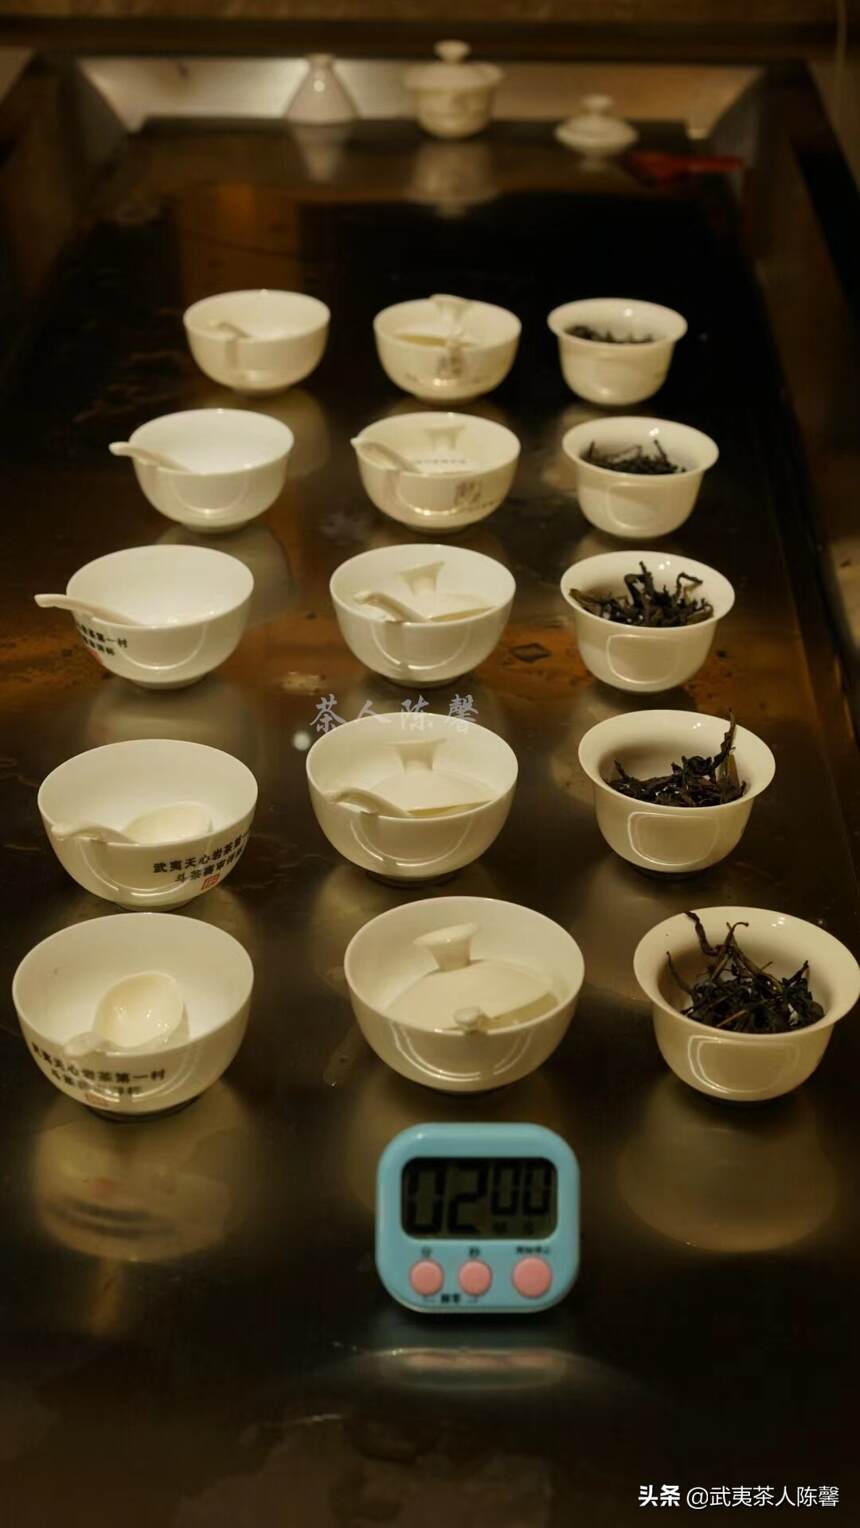 如何辩证看待武夷岩茶“水”与“香”的矛盾